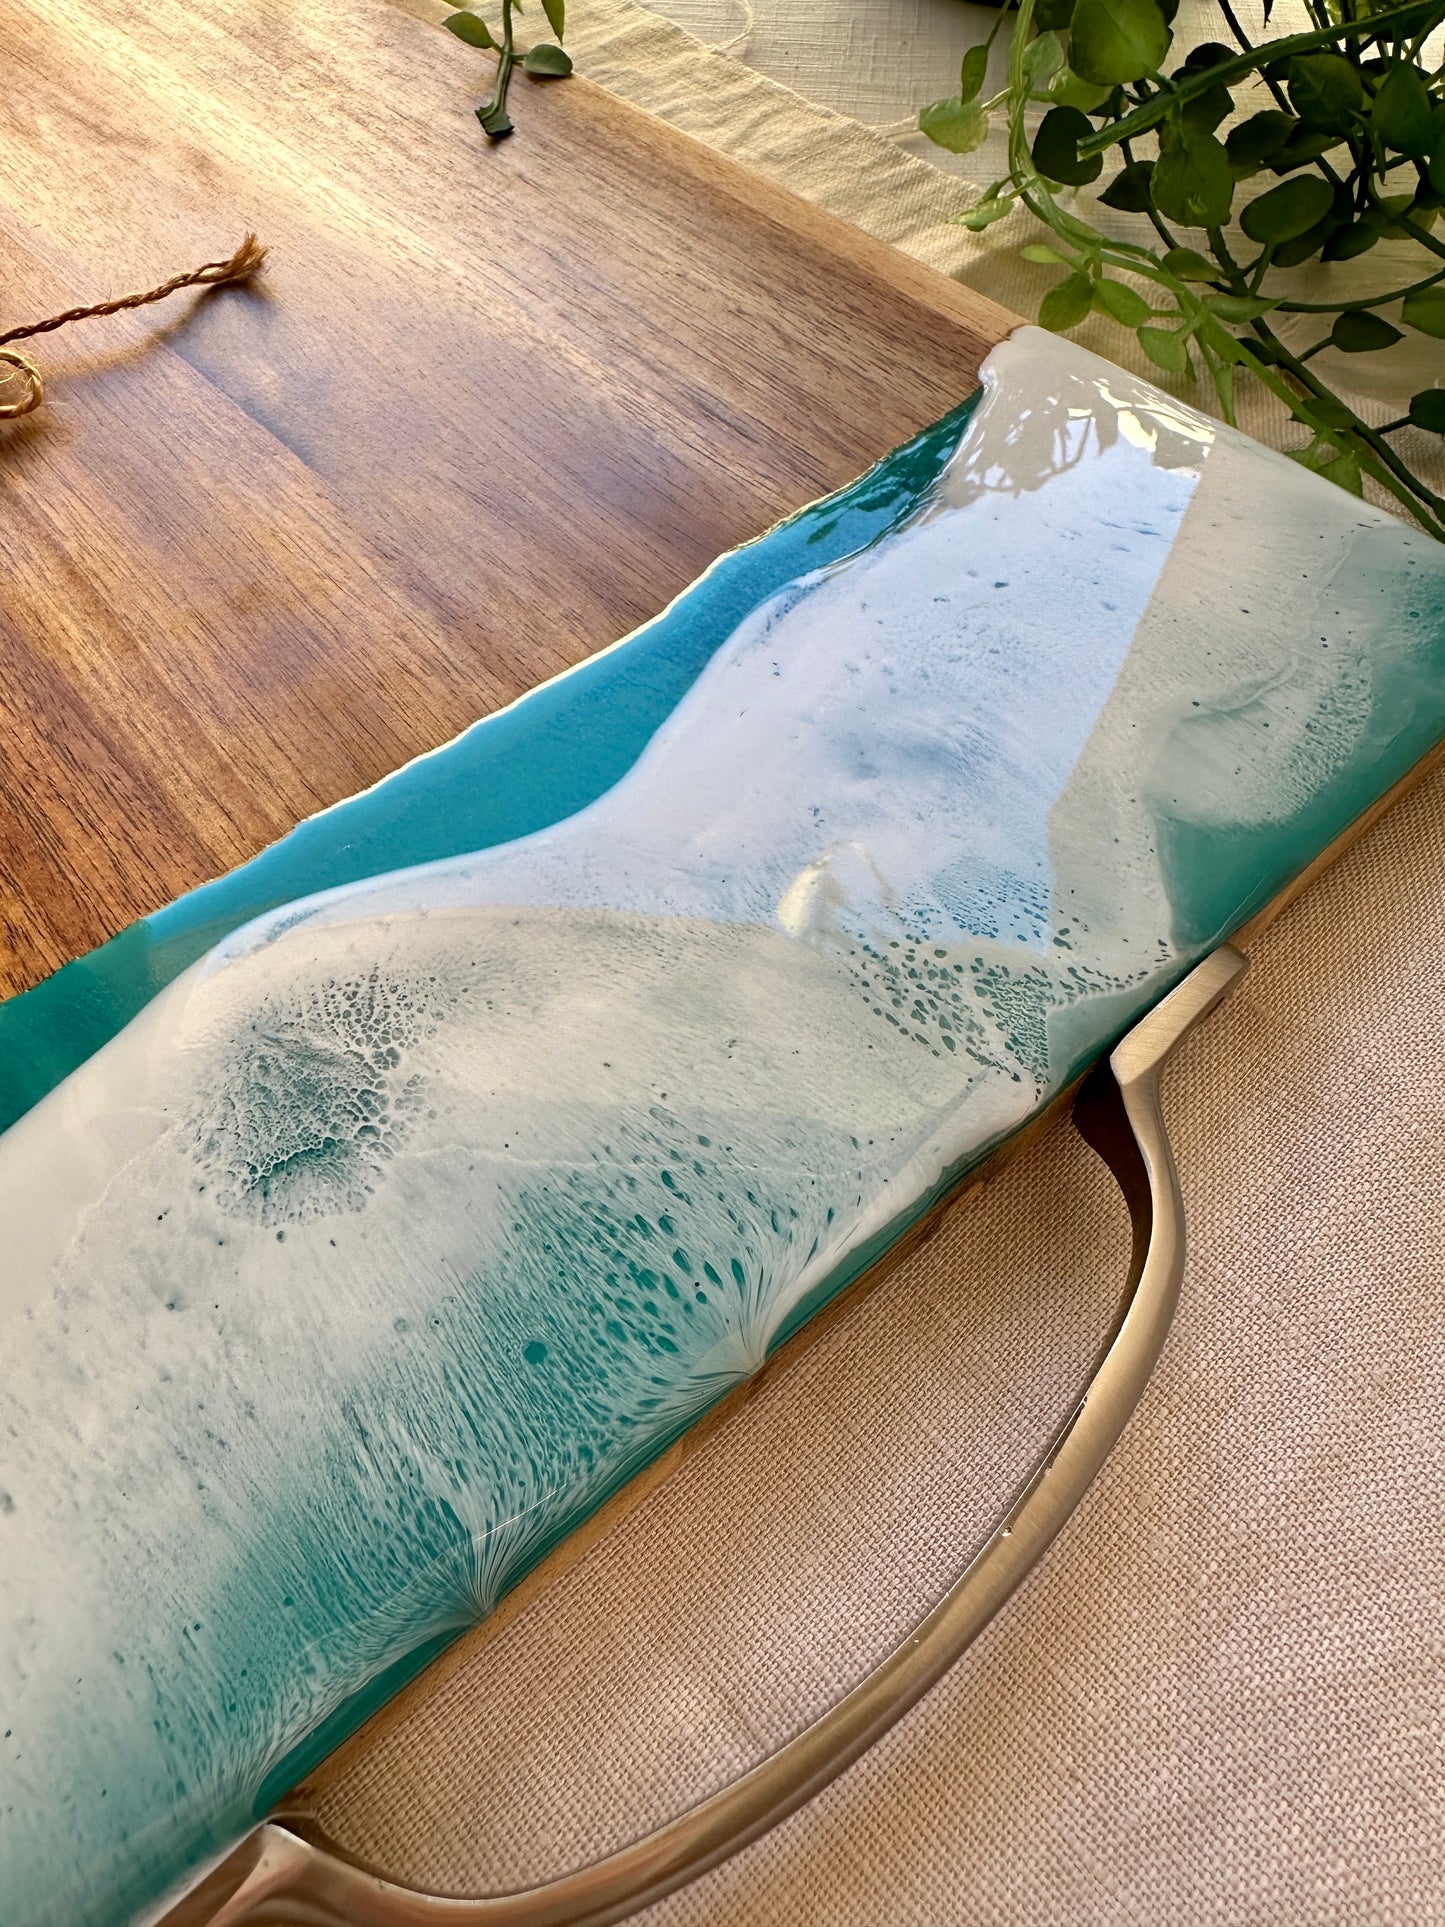 SERVING BOARD - XL teal green ocean board